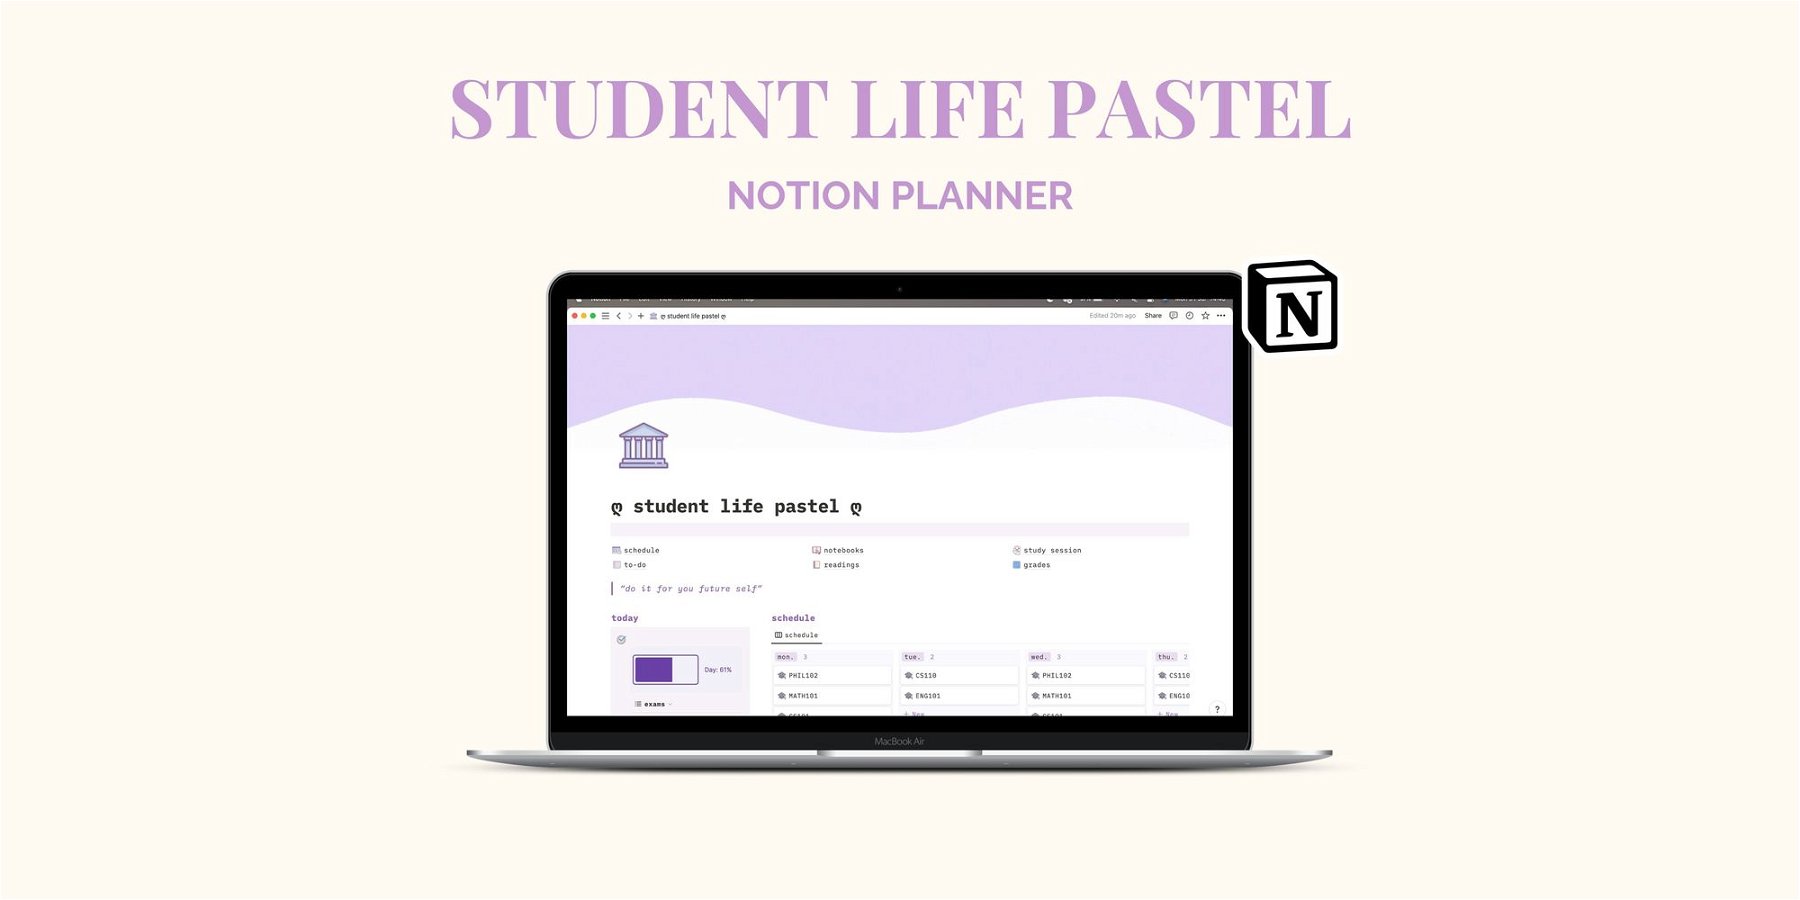 ðŸŽ“ Student Life ðŸŽ“ - Notion Planner For Students [pastel colors]